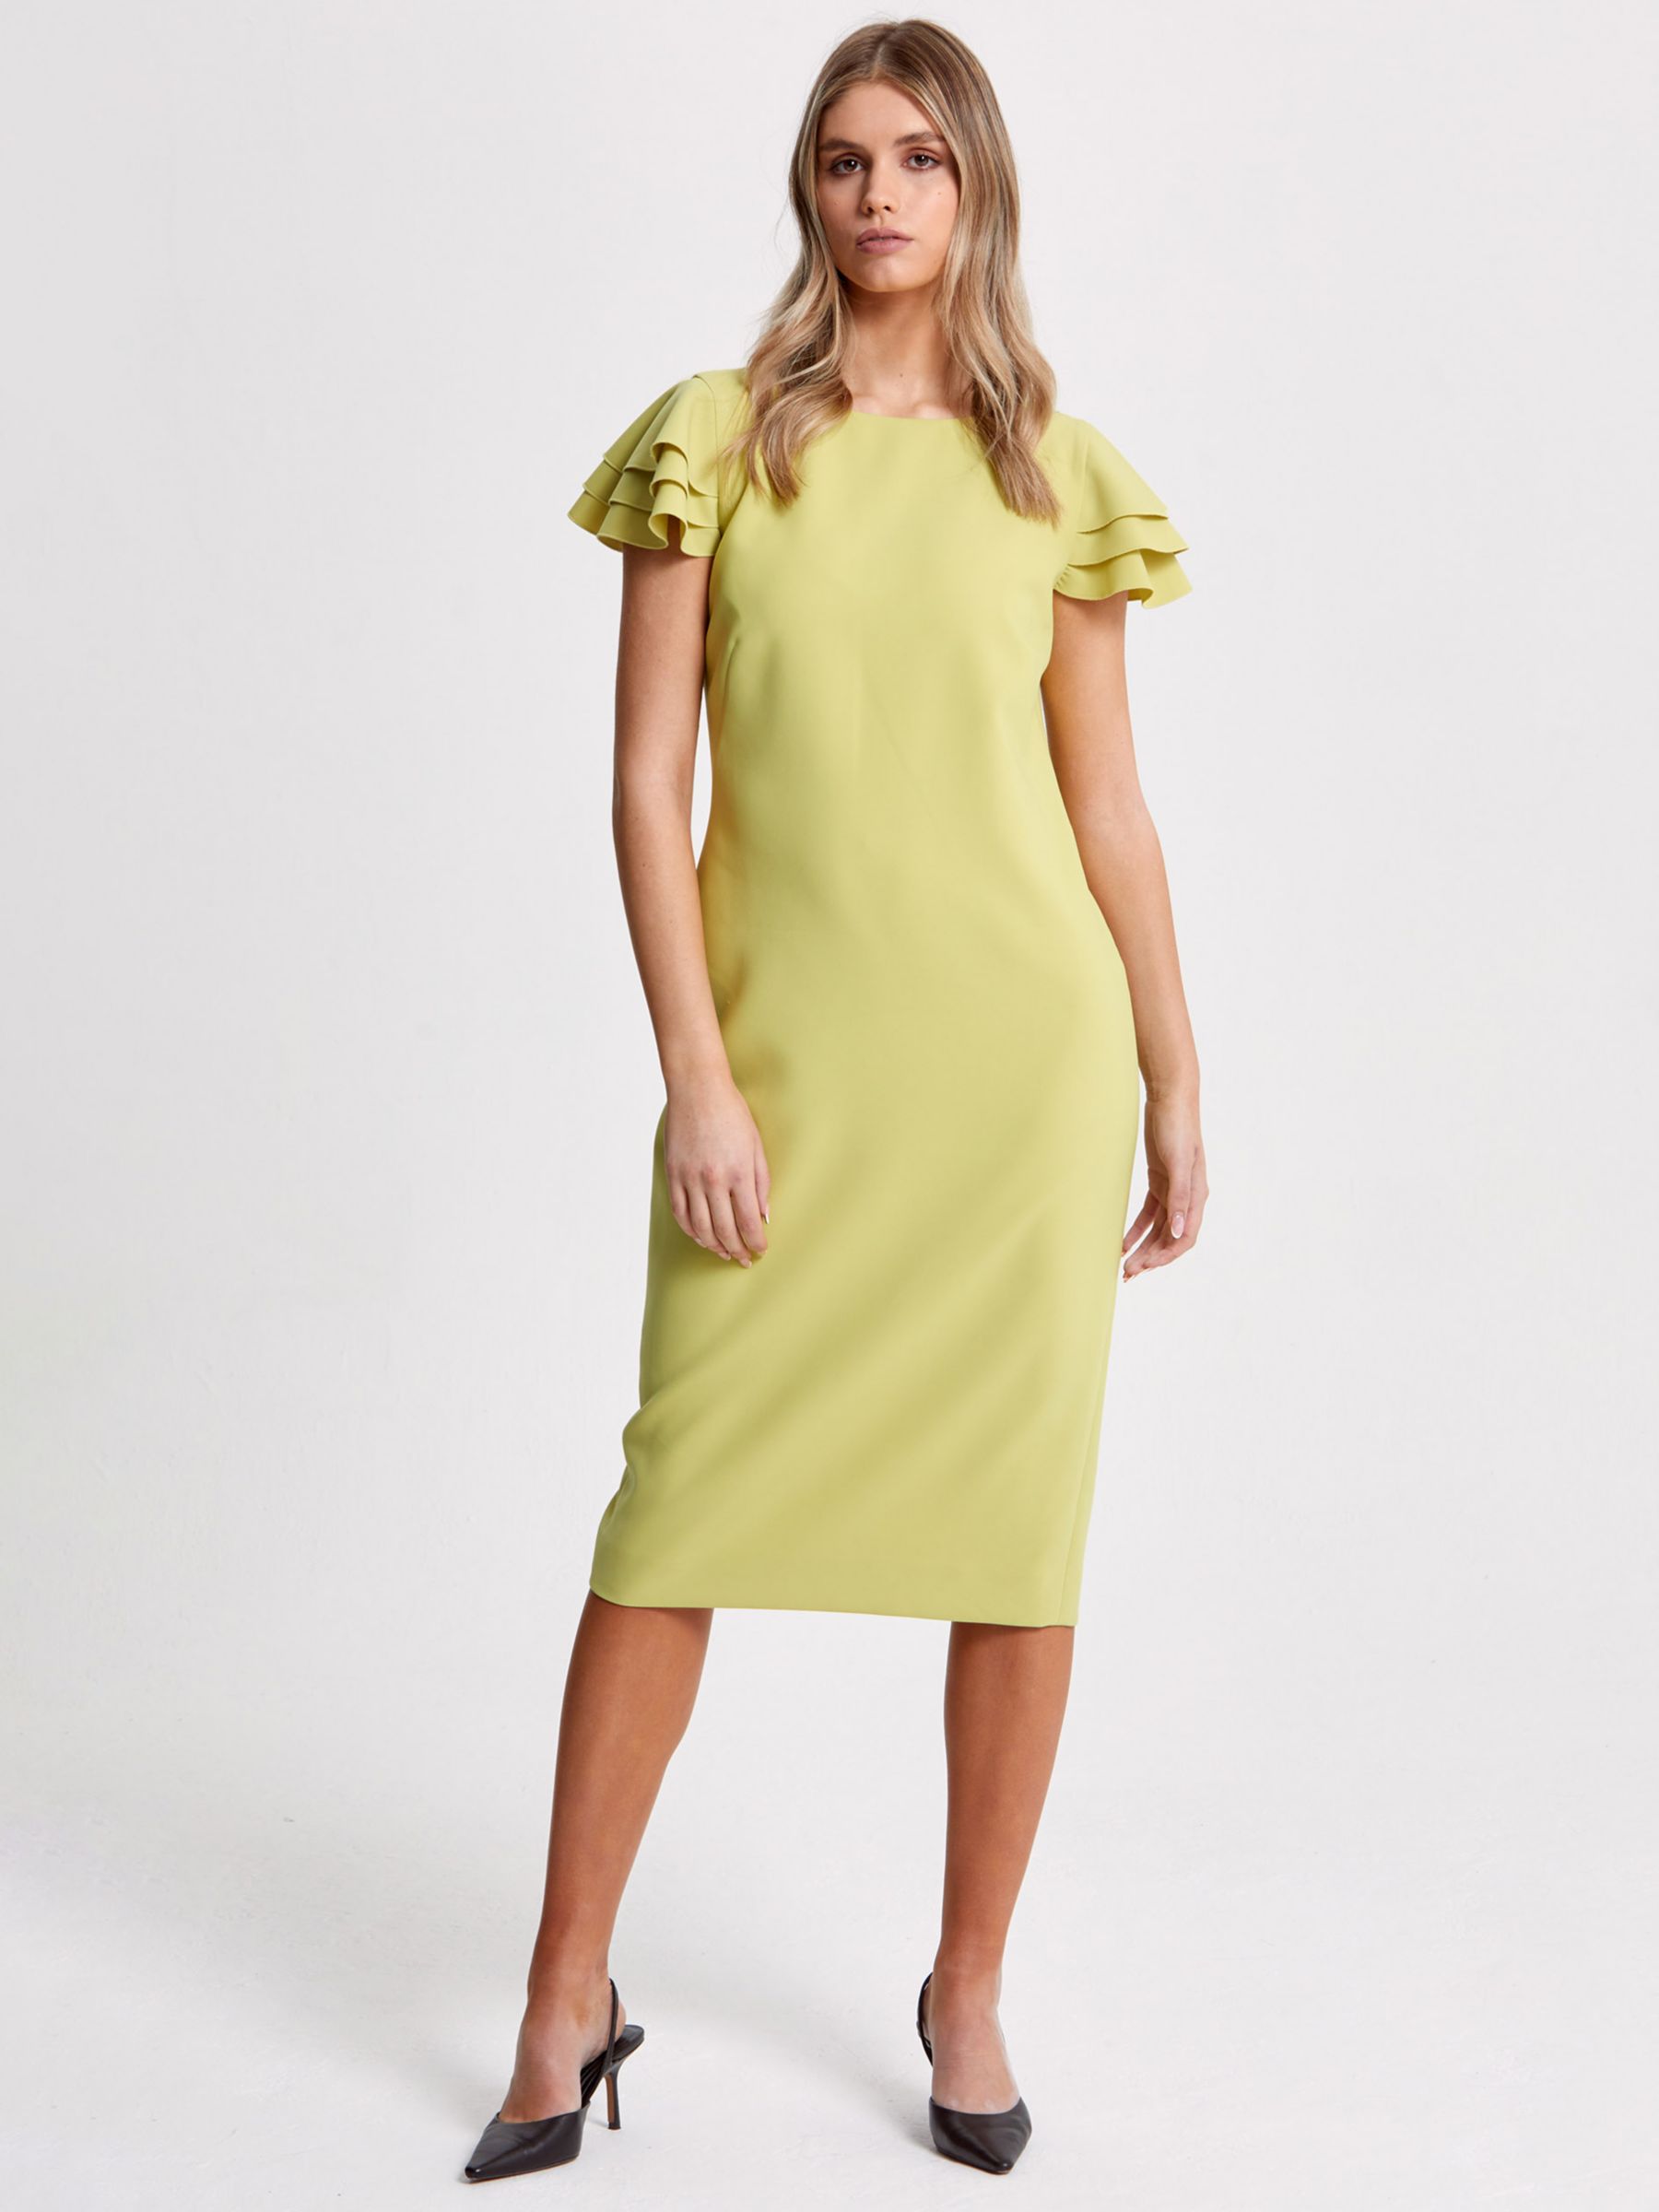 Helen McAlinden Penny Shift Dress, Citrus Yellow